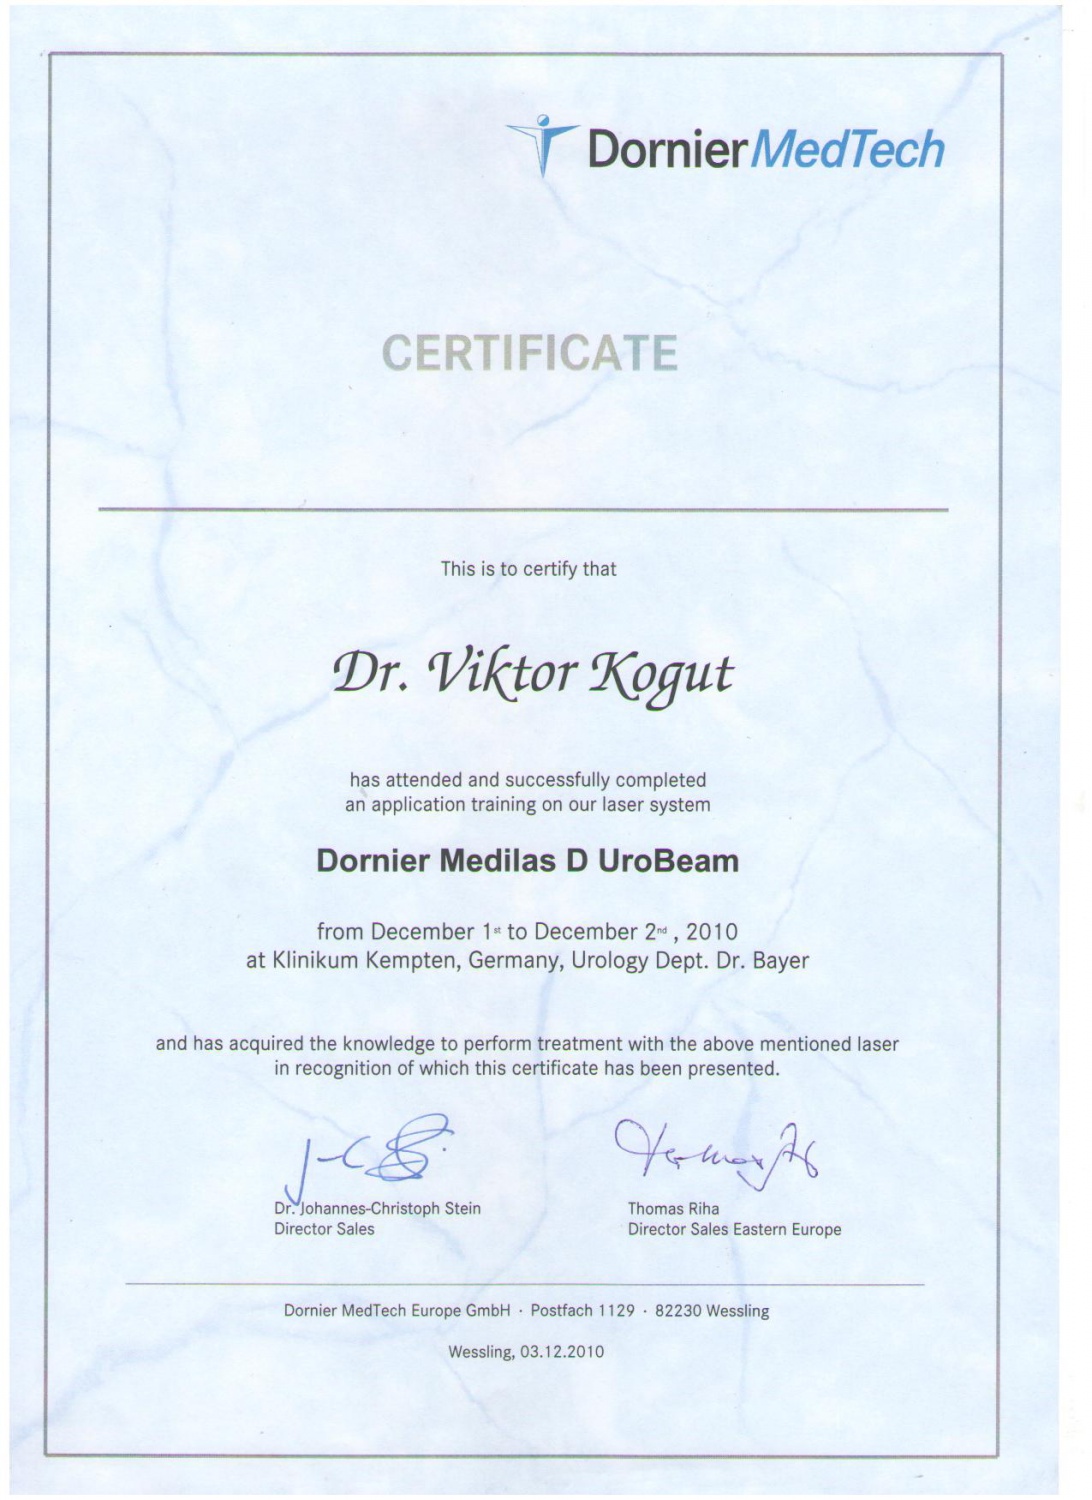 Когут В.В. - Сертифікат про участь та успішне проходження тренінгу з використанням діодного лазера "Dornier Medilas D UroBeam" (2010 г.)